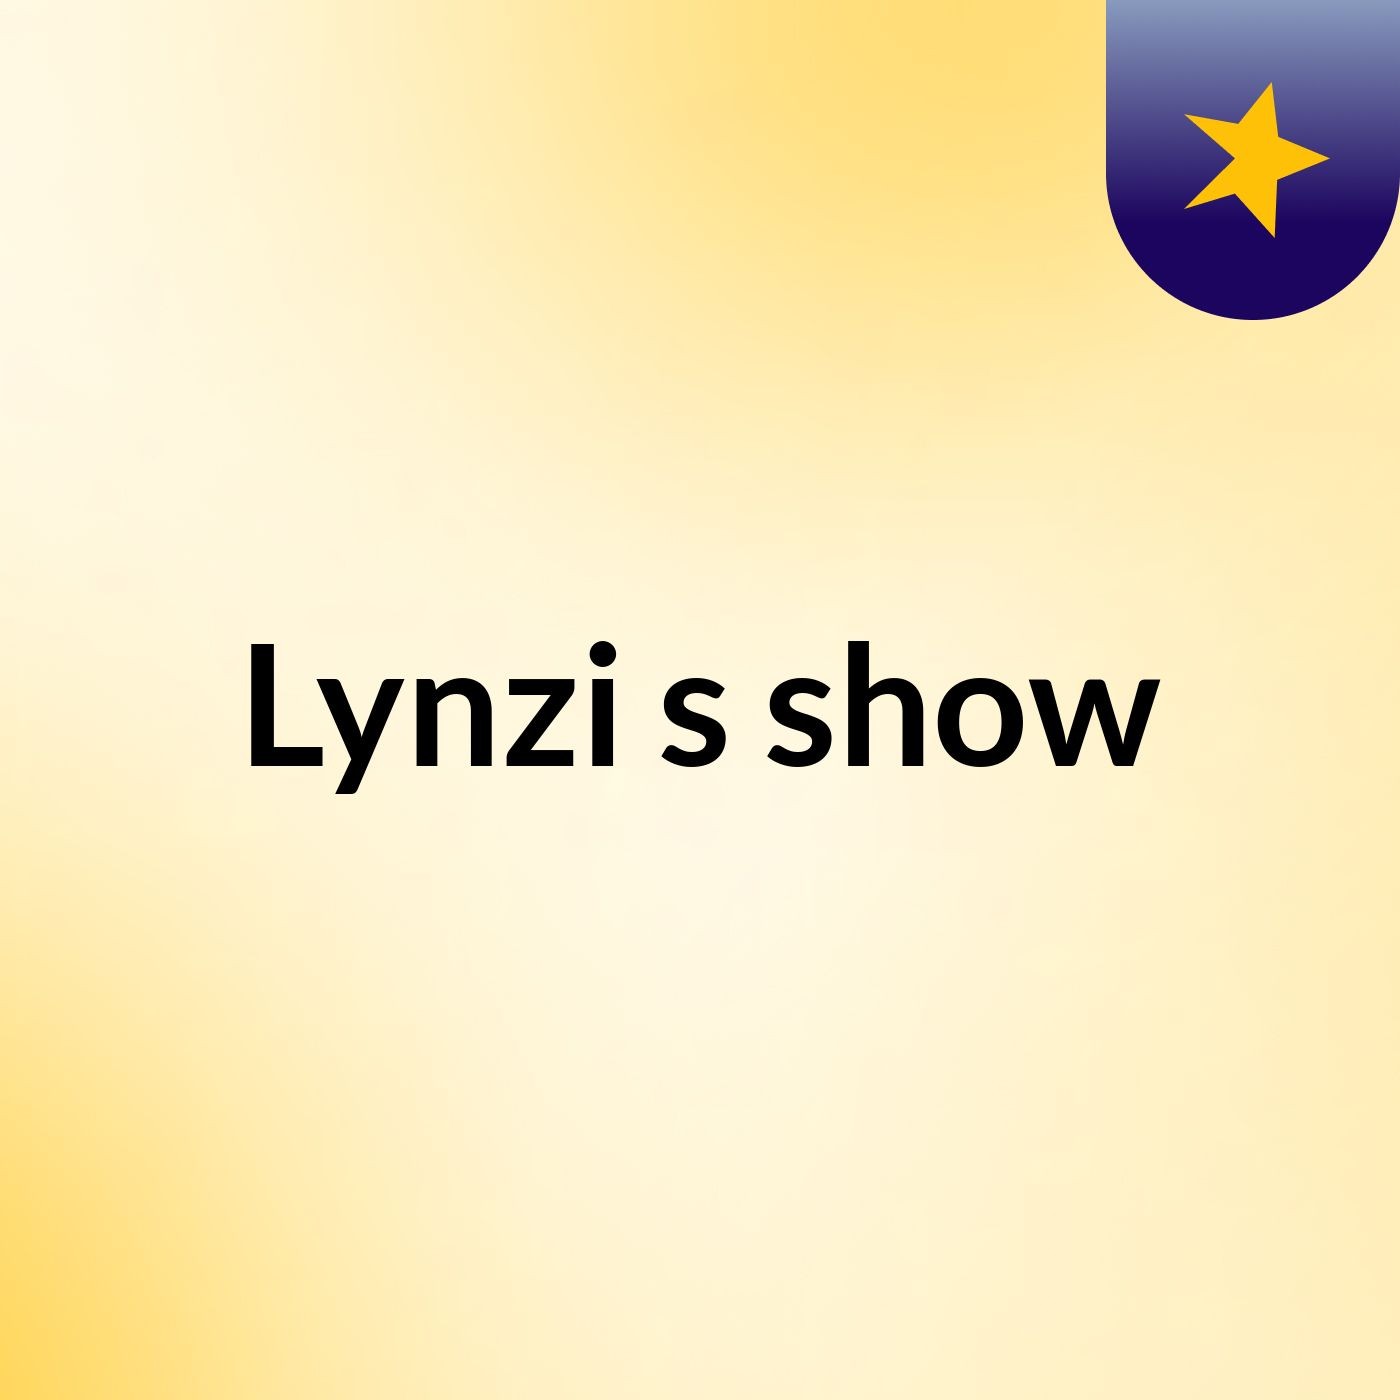 Lynzi's show